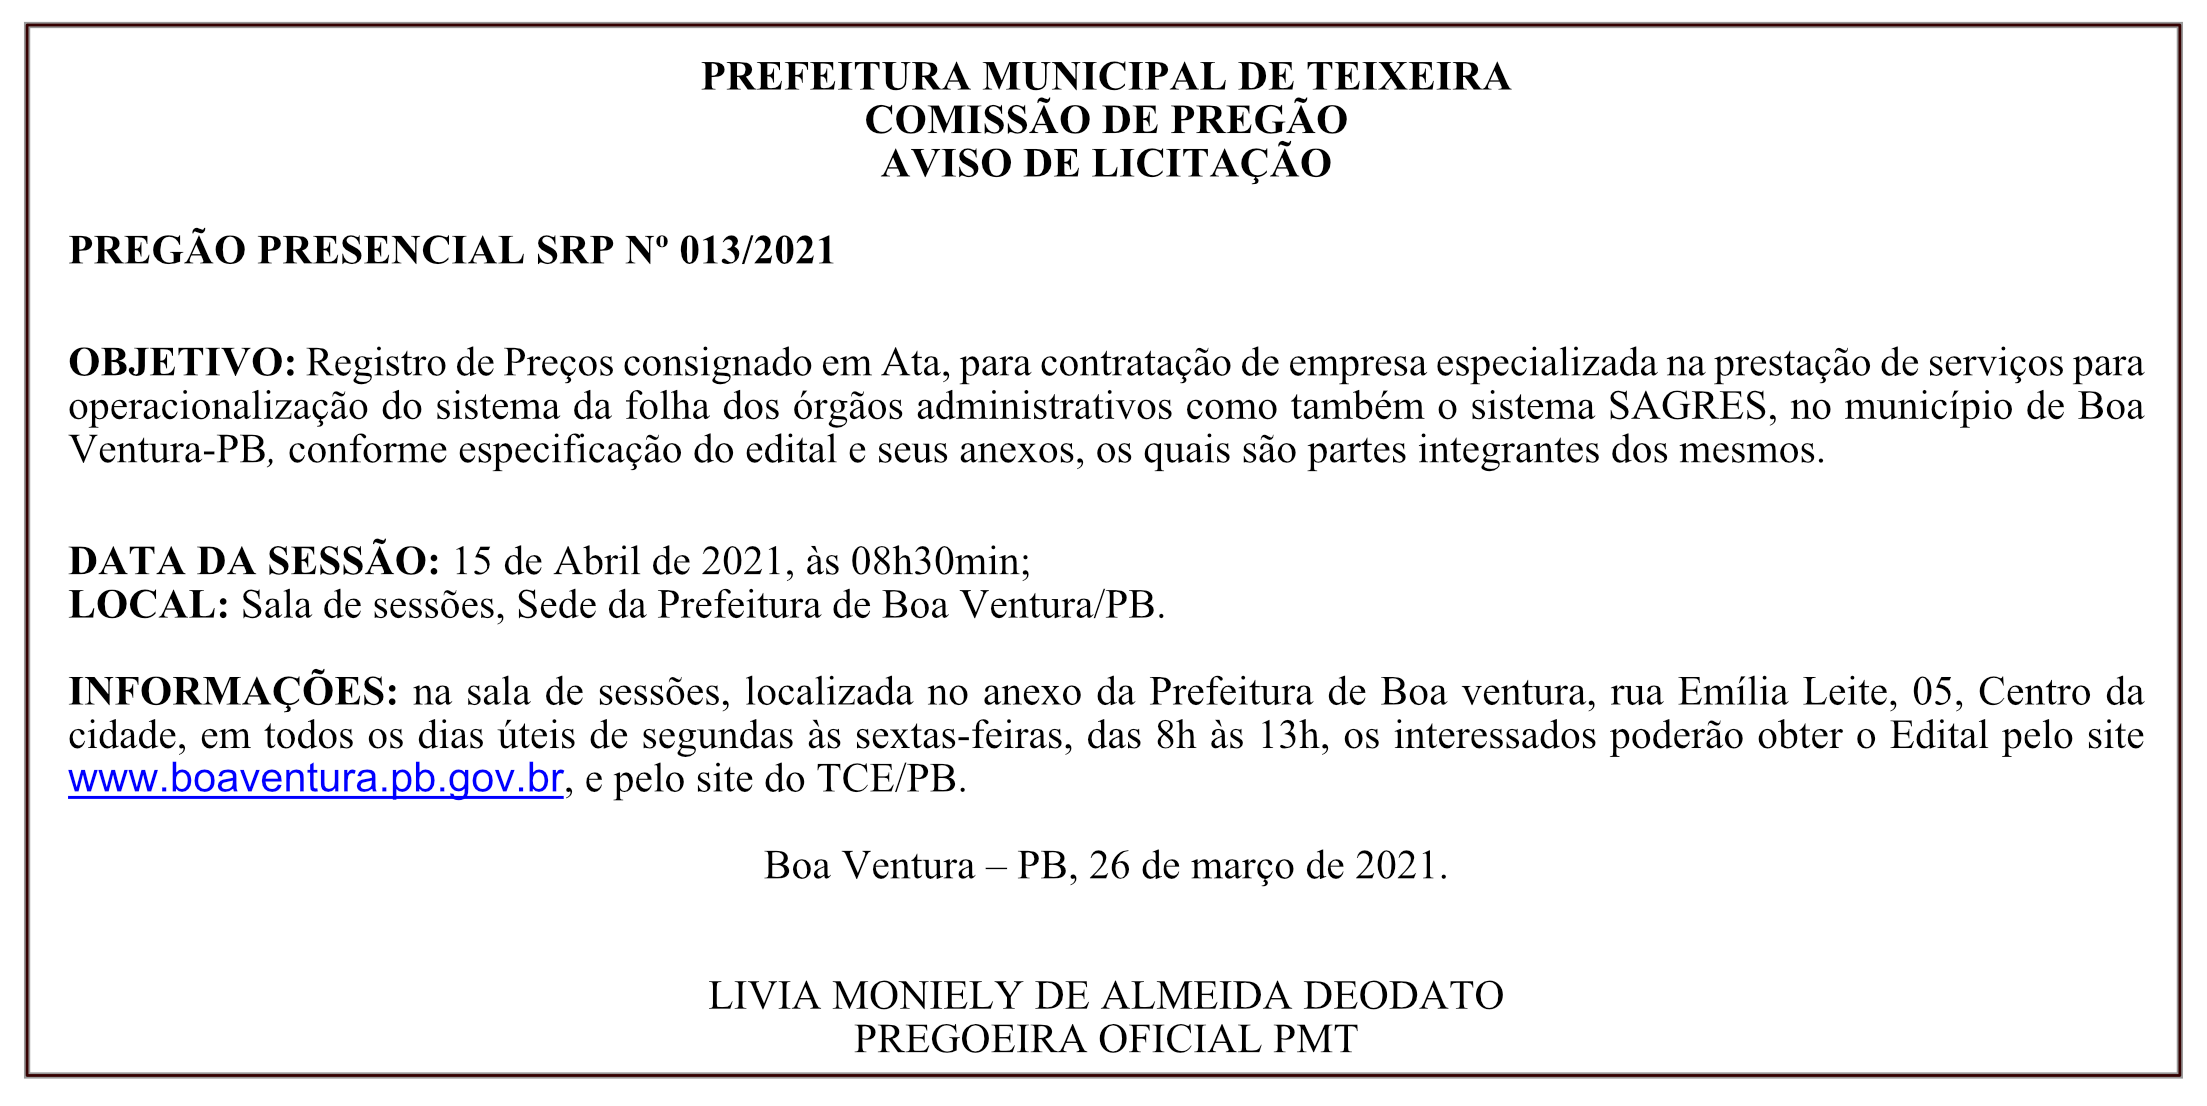 PREFEITURA MUNICIPAL DE TEIXEIRA – COMISSÃO DE PREGÃO – AVISO DE LICITAÇÃO – PREGÃO PRESENCIAL SRP Nº 013/2021